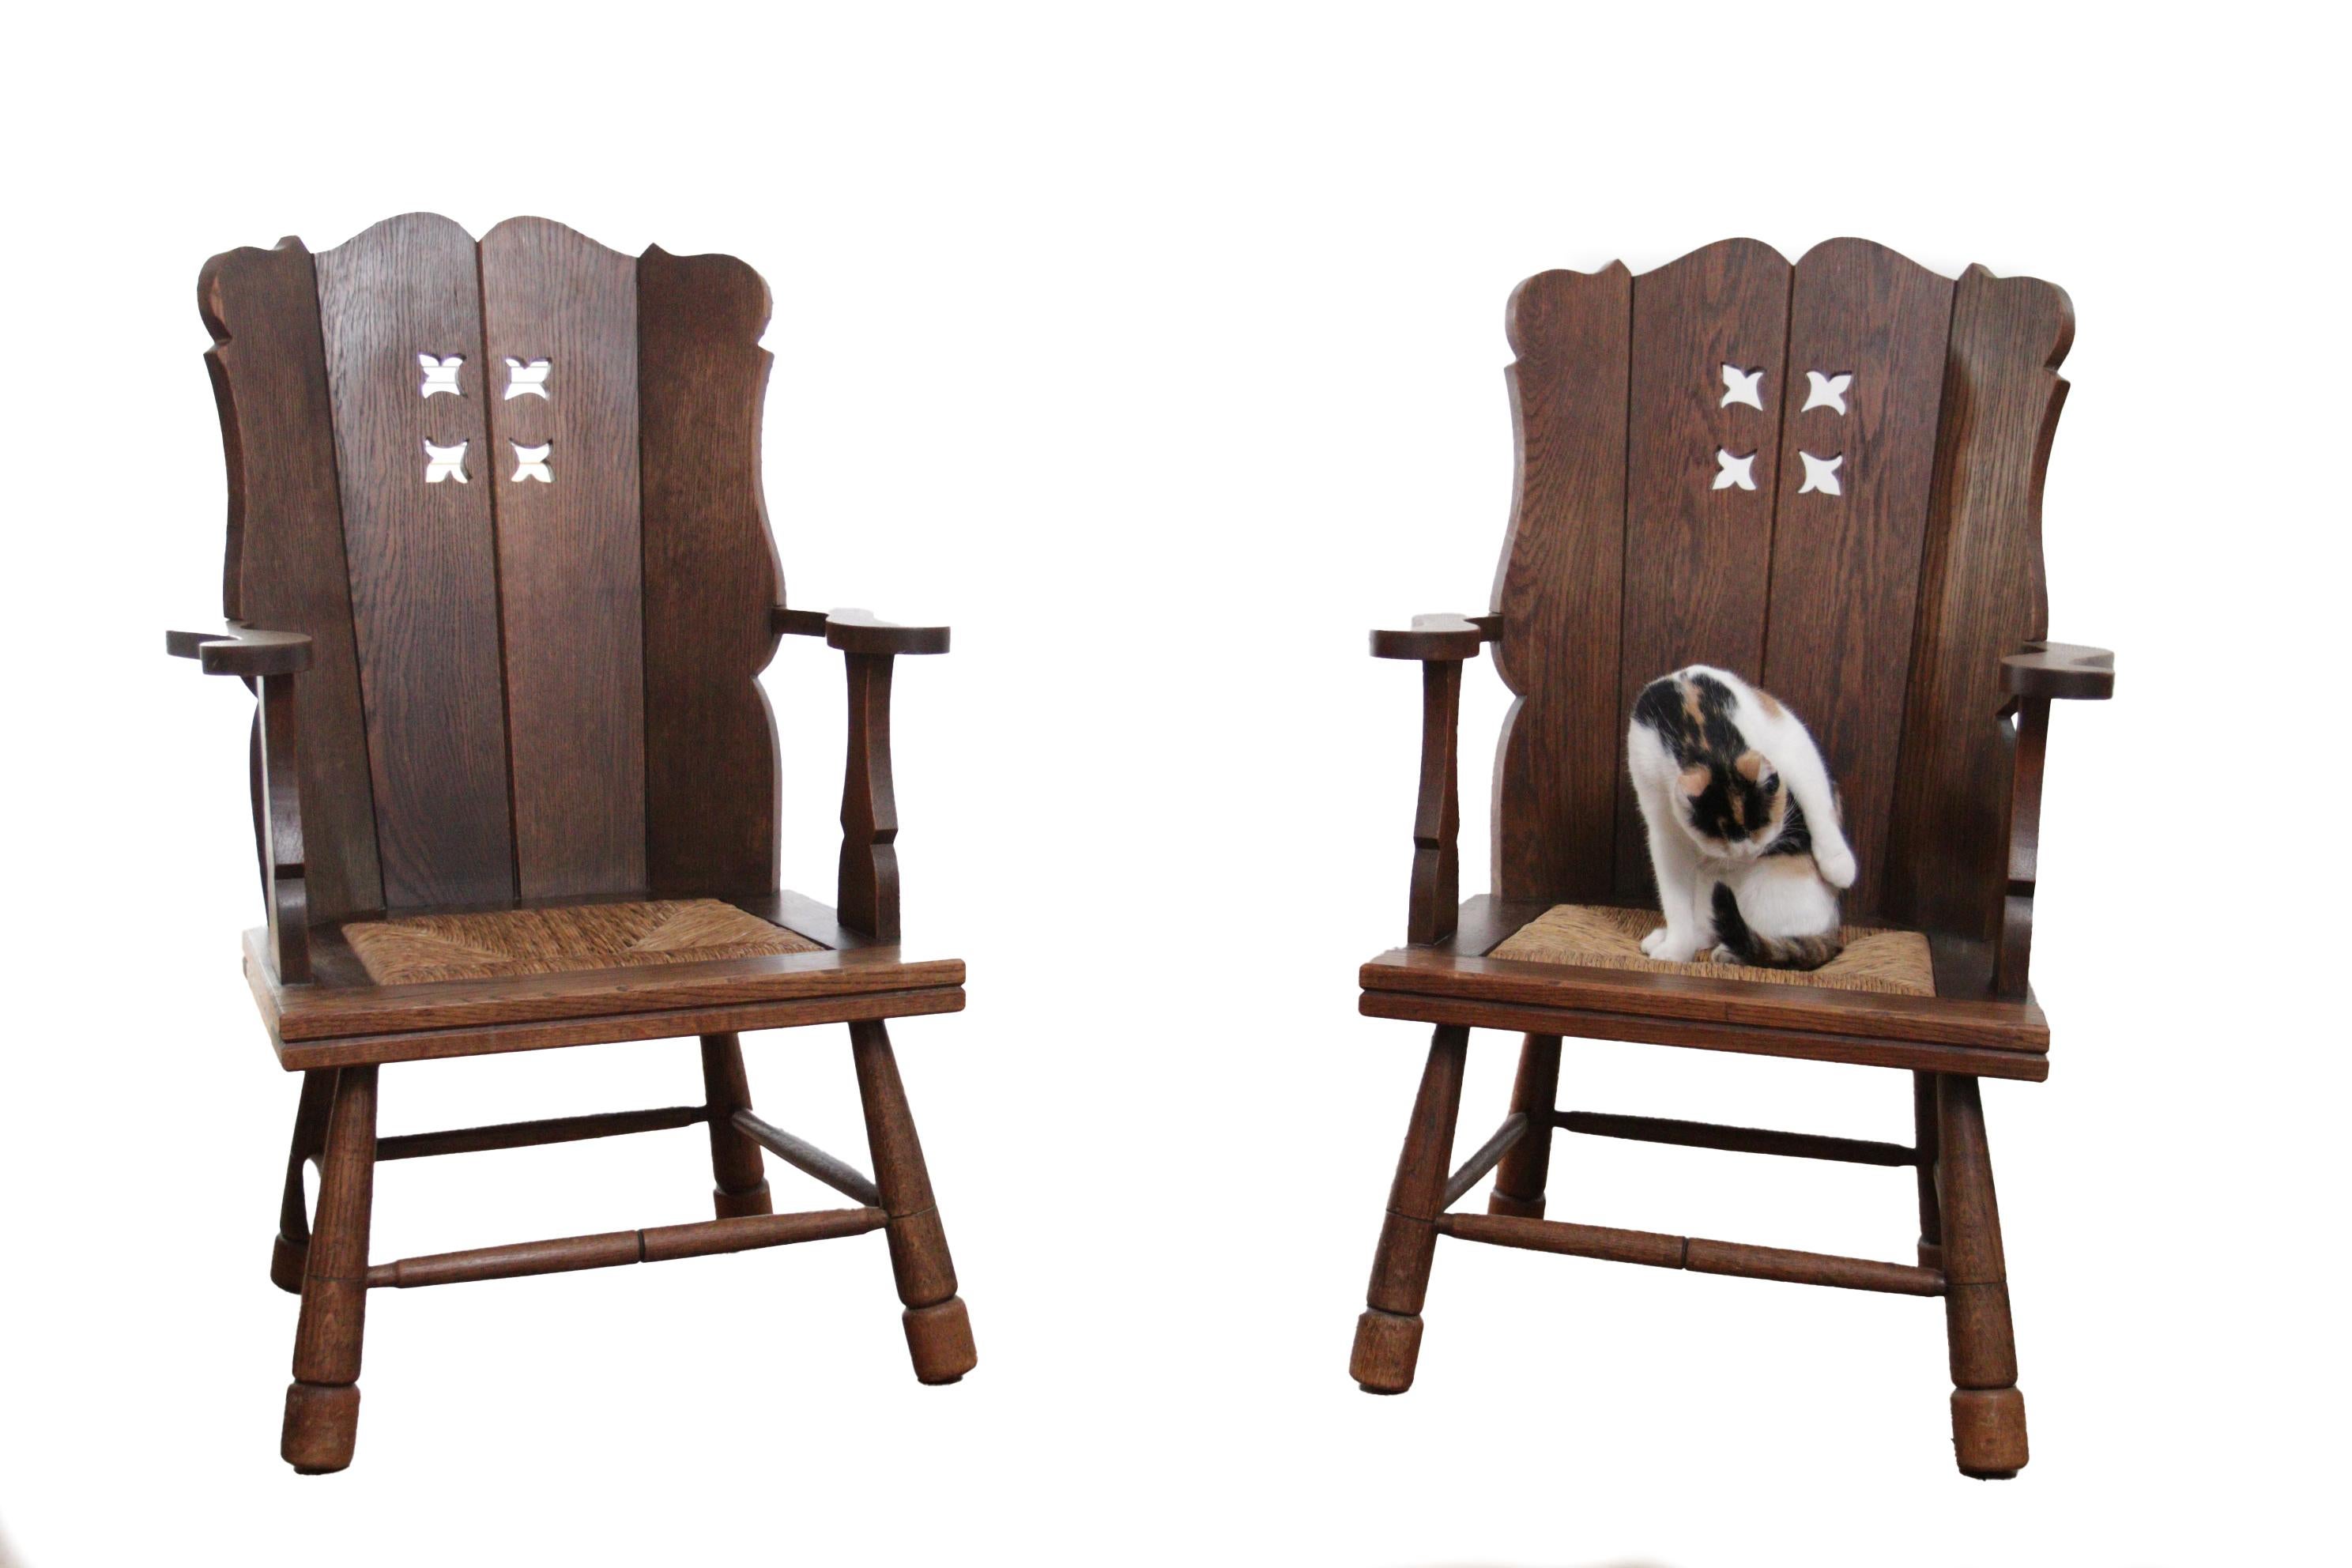 Zwei schöne Stühle aus massiver Eiche mit einem Sitz aus Binsen aus den 1930er Jahren.
Sie passen perfekt zum Stil von Designern wie Henning Kjærnulf, Axel Einar Hjorth, Charlotte Perriand, Jean Touret und Charles Dudouyt.
Die Stühle sind bequem und